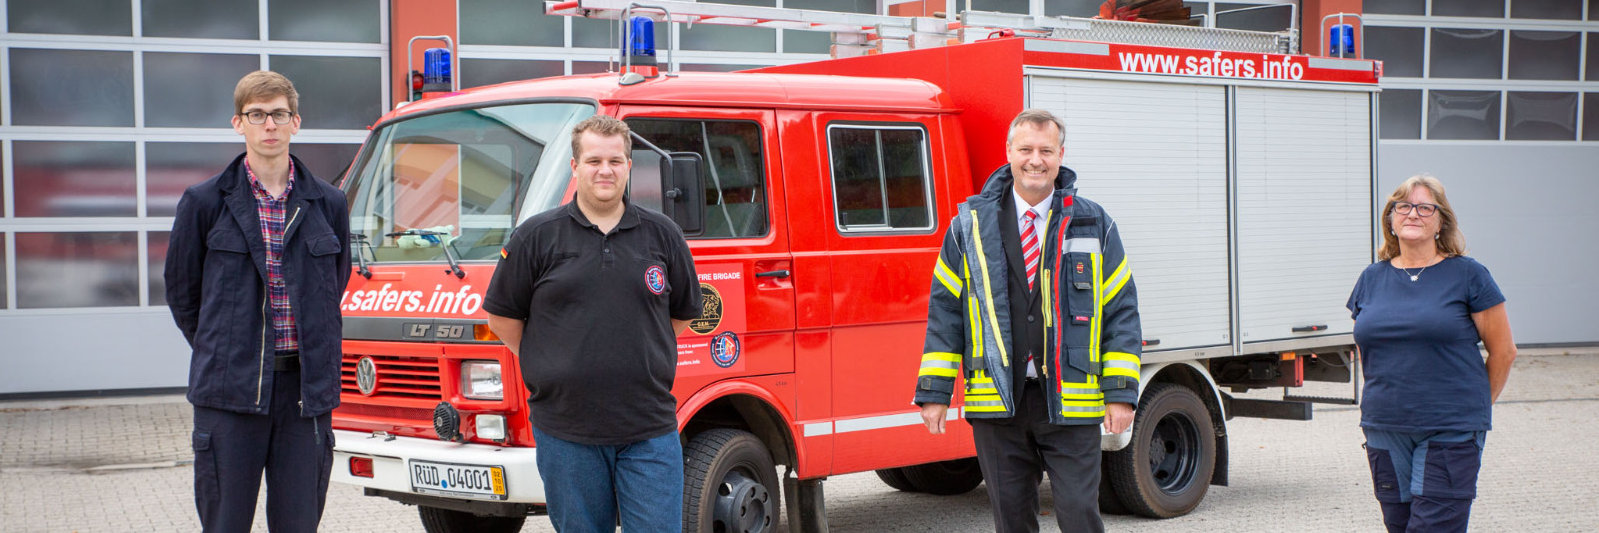 Feuerwehrfahrzeug aus Langenseifen wird nach Griechenland überführt